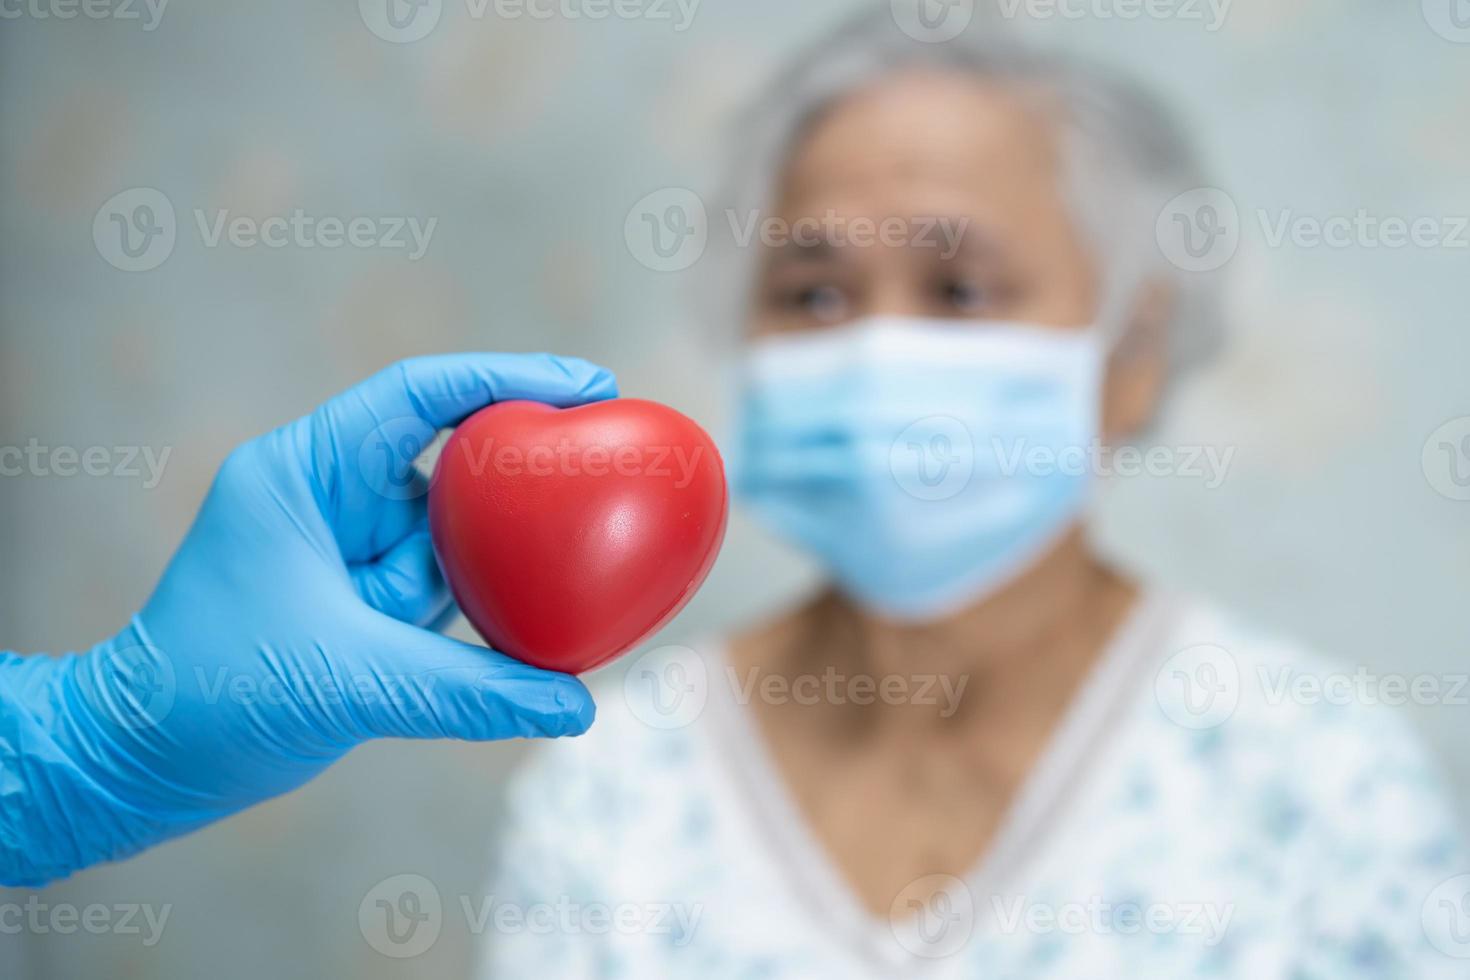 il medico dà il cuore rosso a una donna anziana o anziana asiatica paziente, sano concetto medico foto